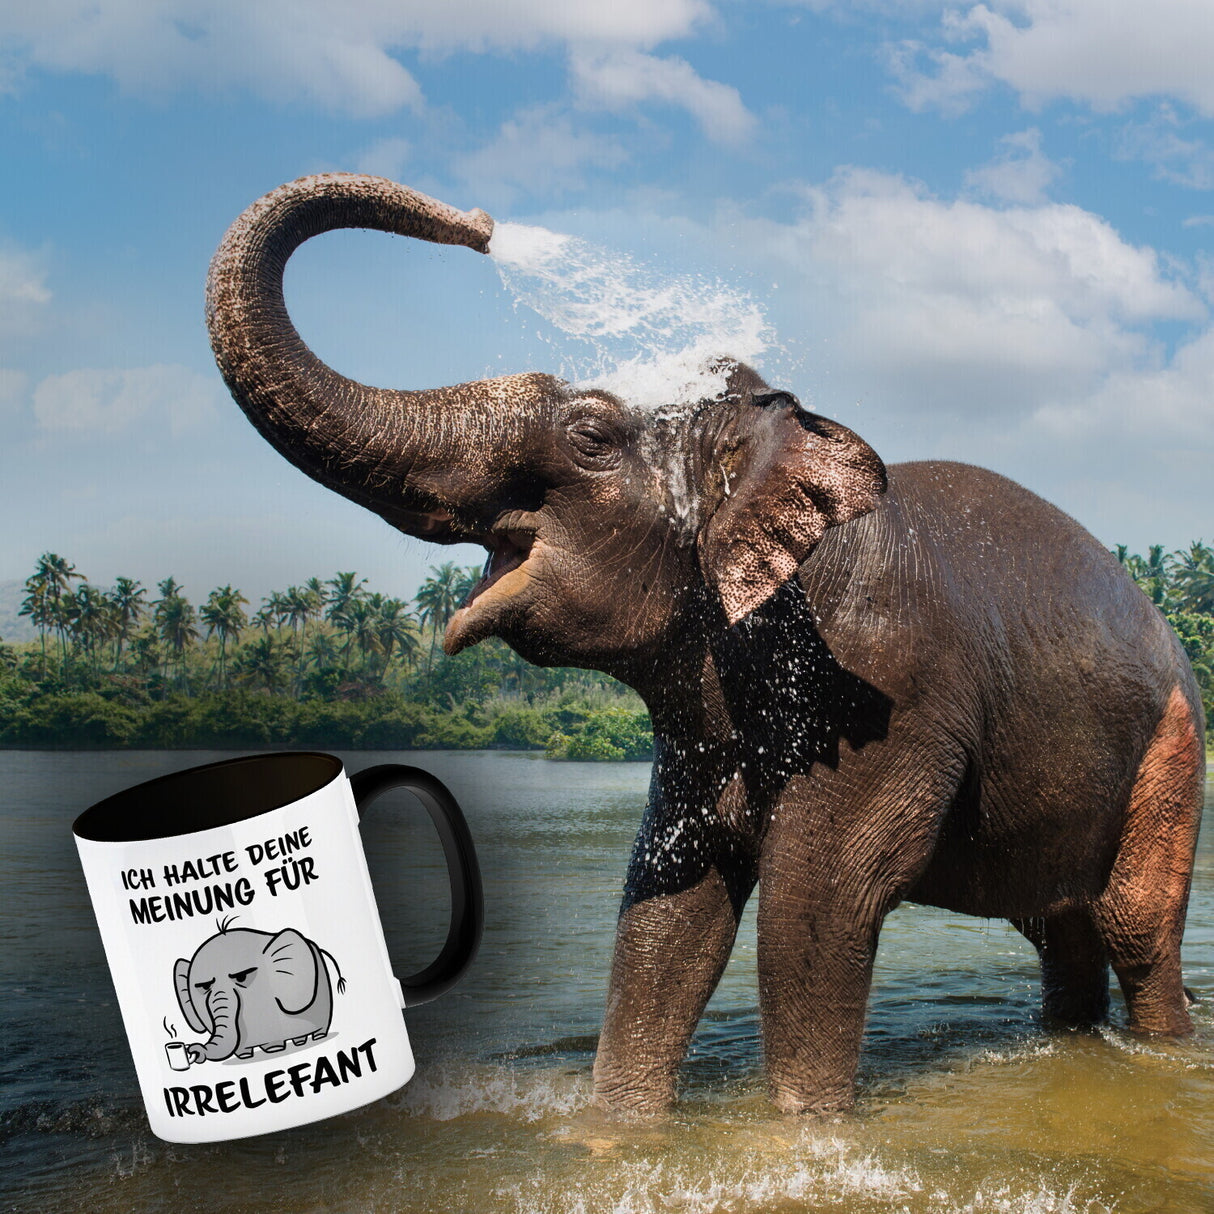 Ich halte deine Meinung für Irrelefant Kaffeebecher mit witzigem Elefanten